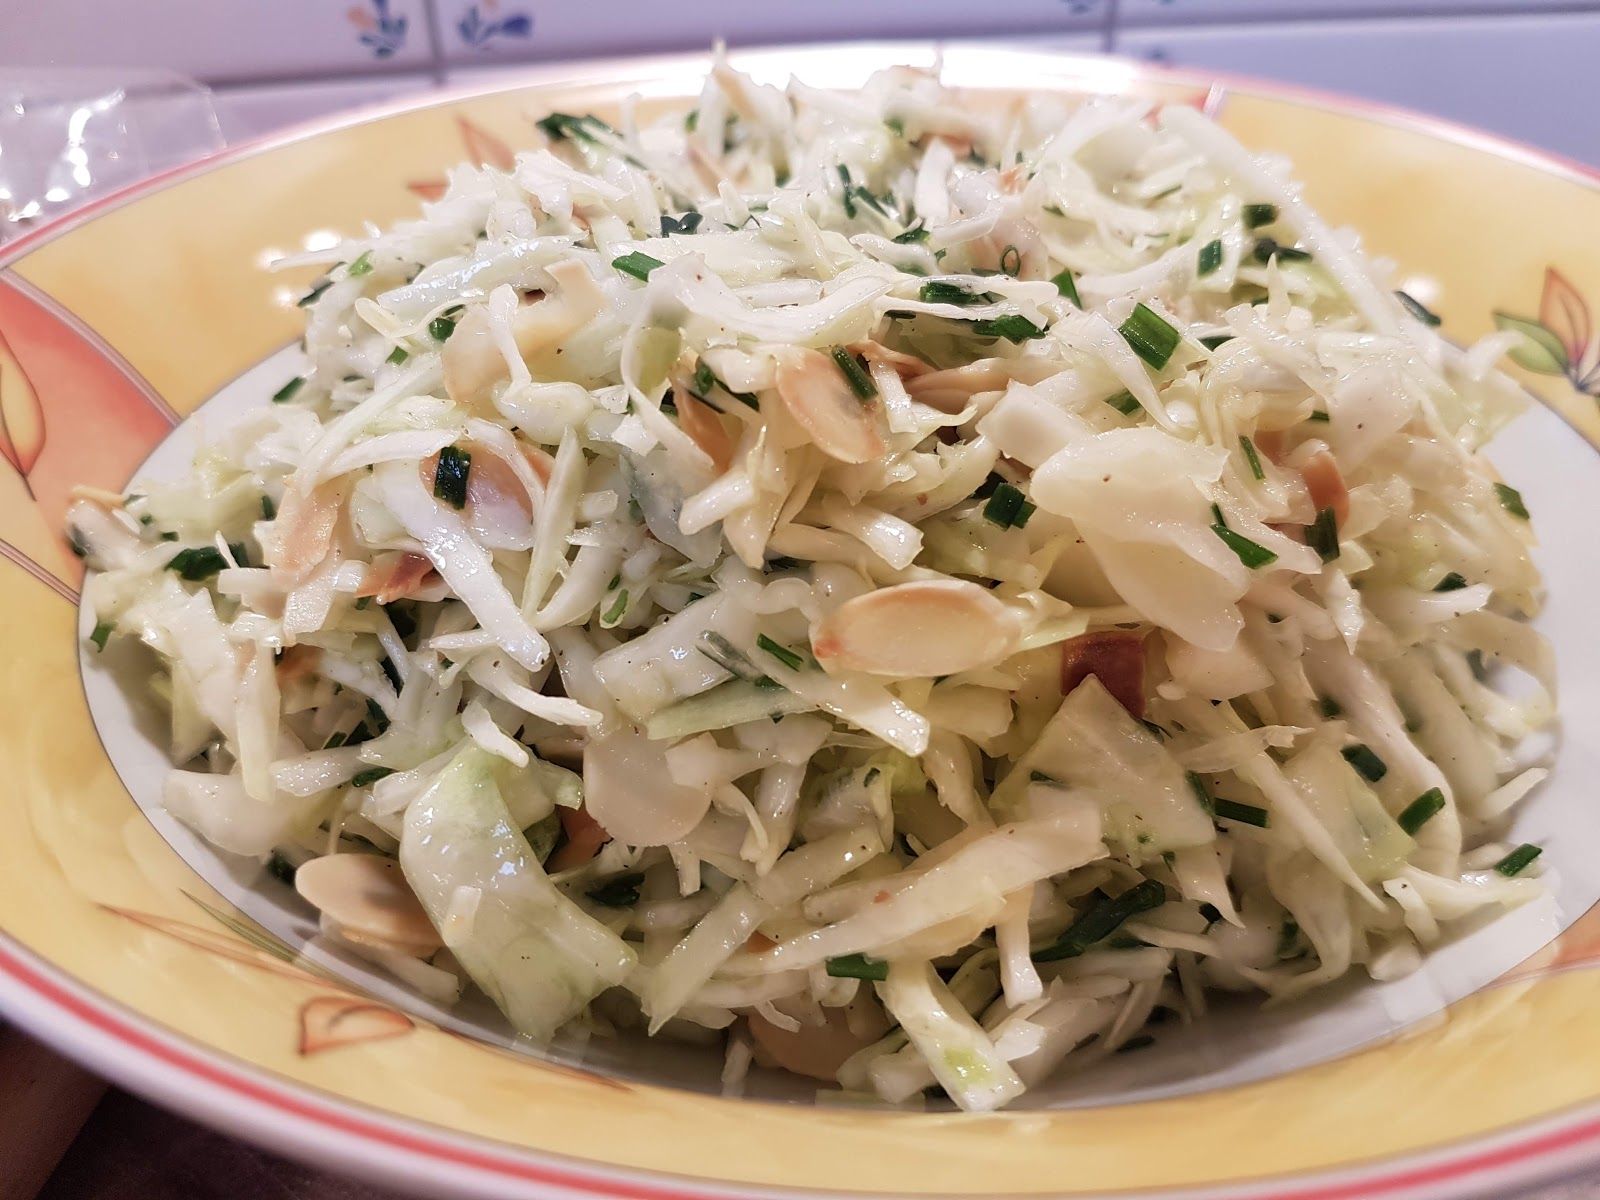 Aus dem Lameng: Spitzkohlsalat mit Schnittlauch und Mandelblättchen